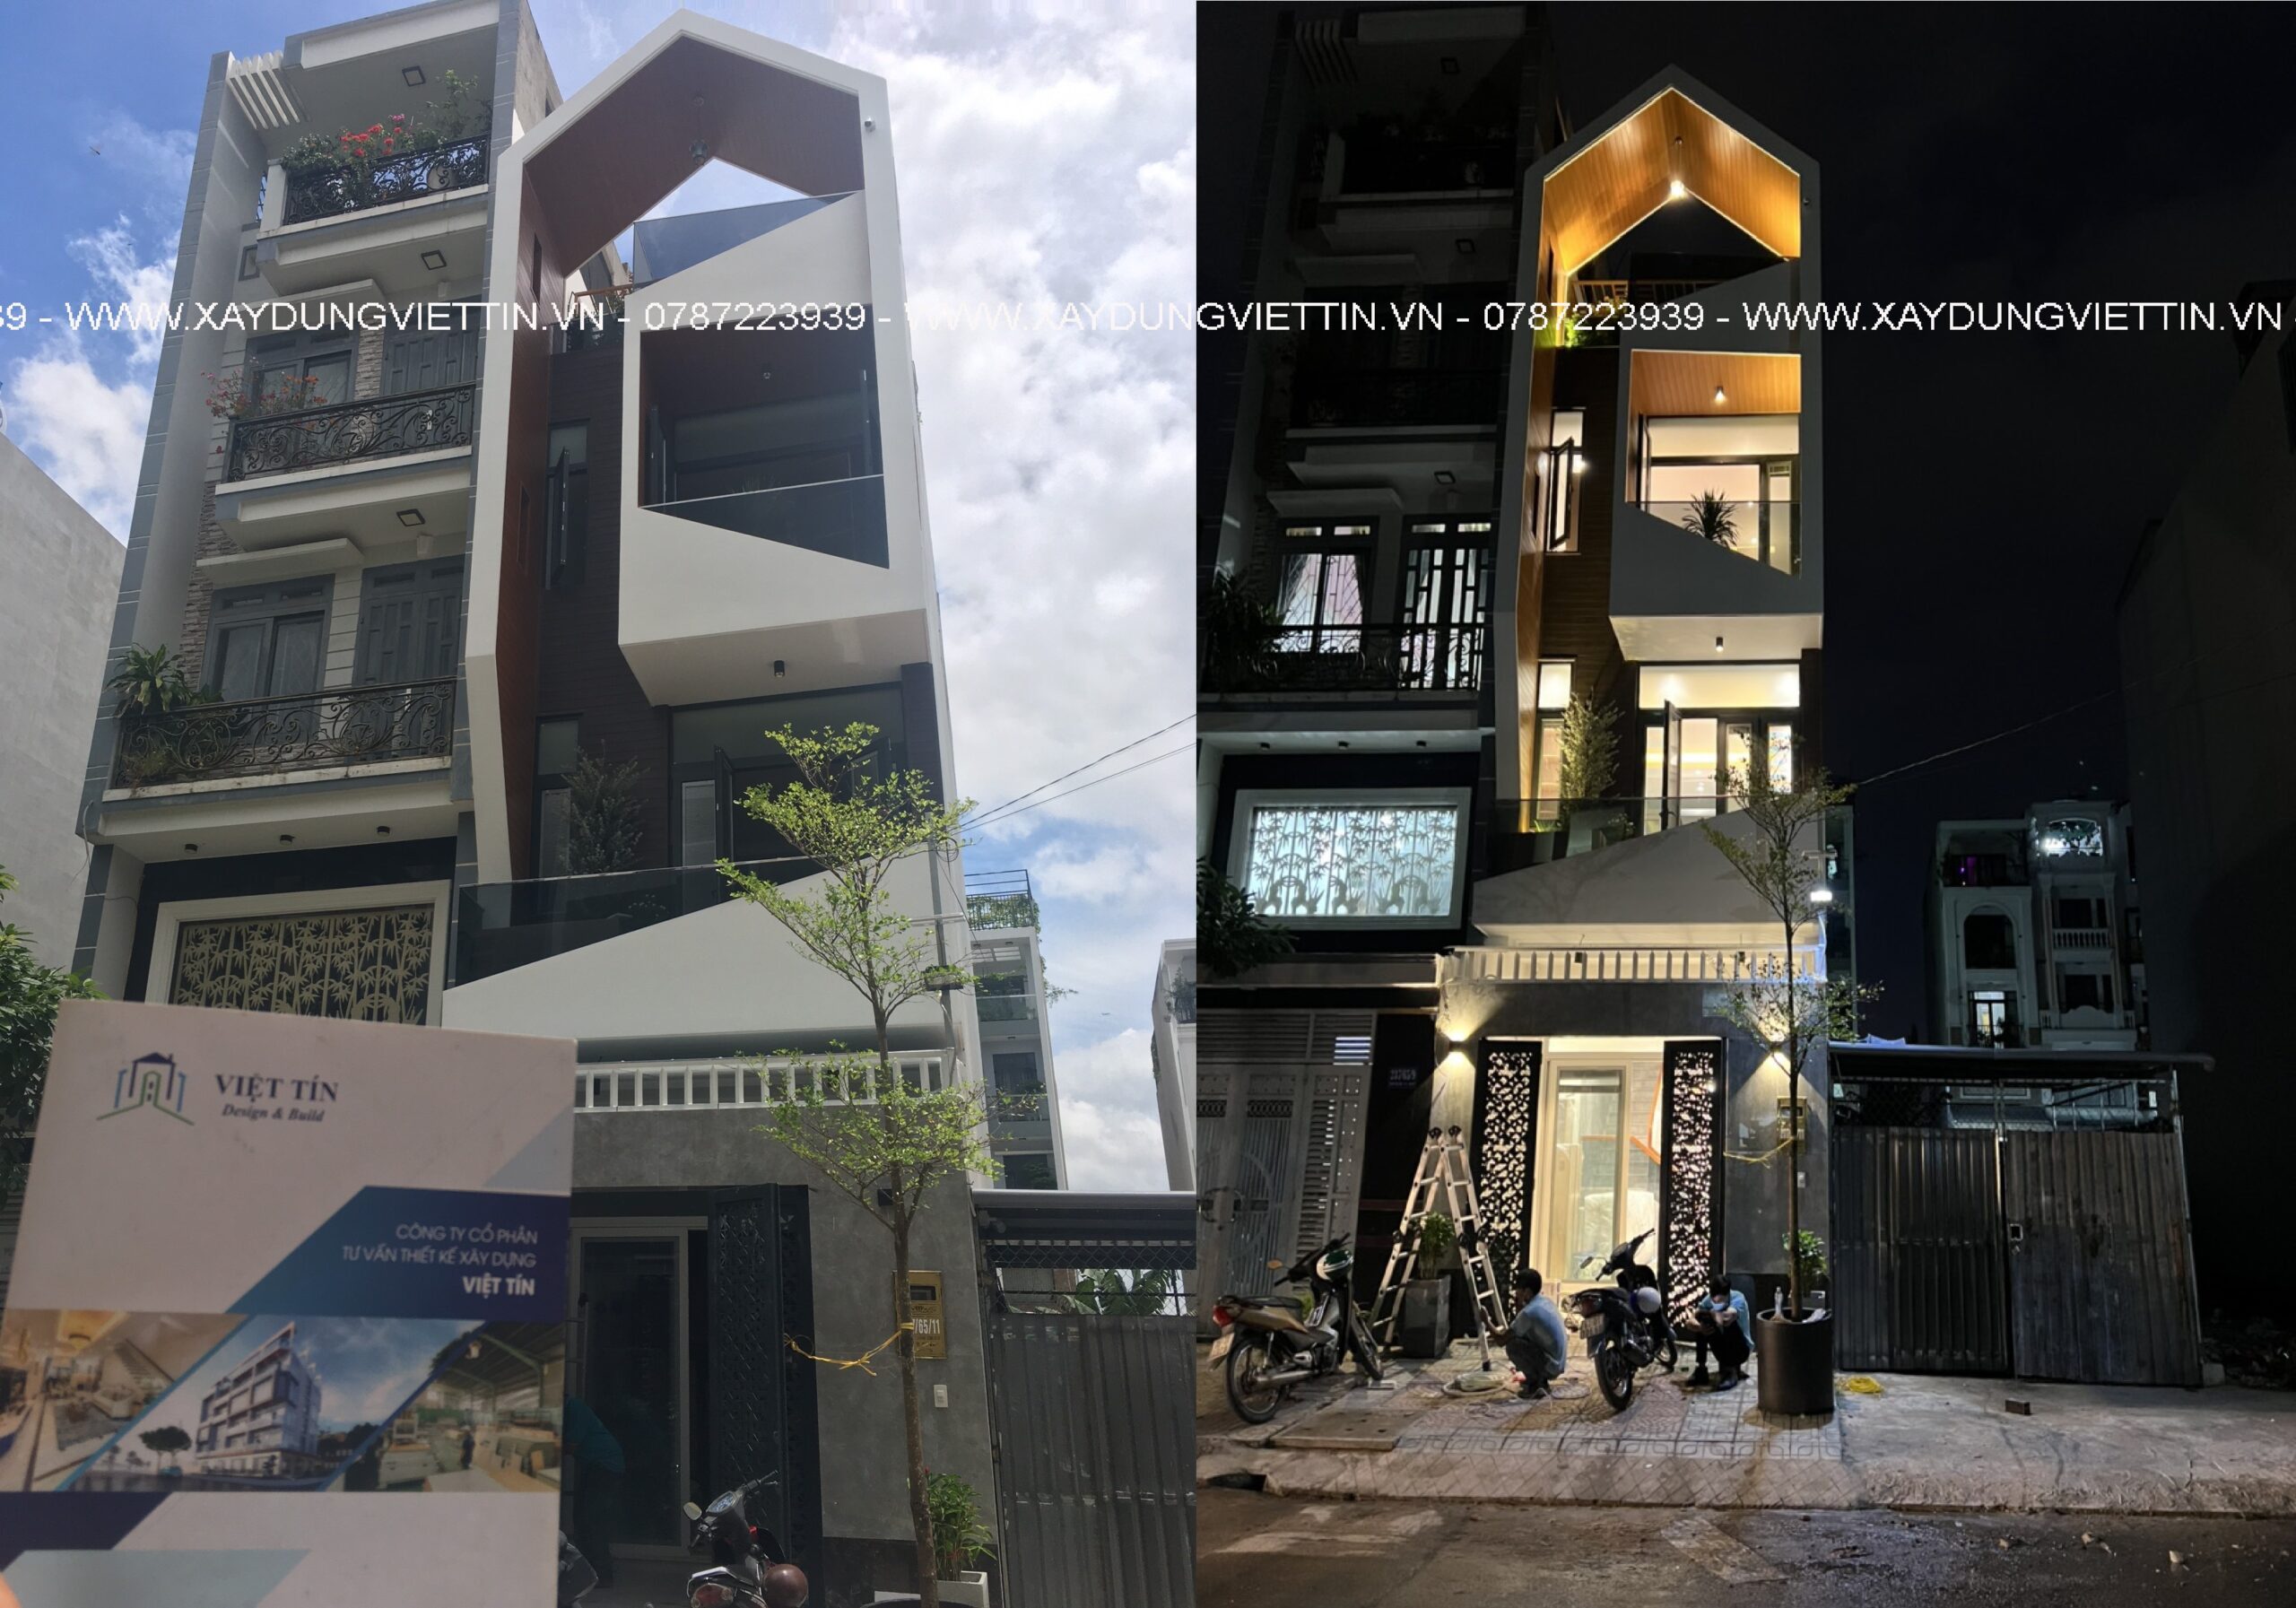 Khám phá căn nhà phố hiện đại 3 tầng của anh giám đốc - VIET TIN CONSTRUCTION